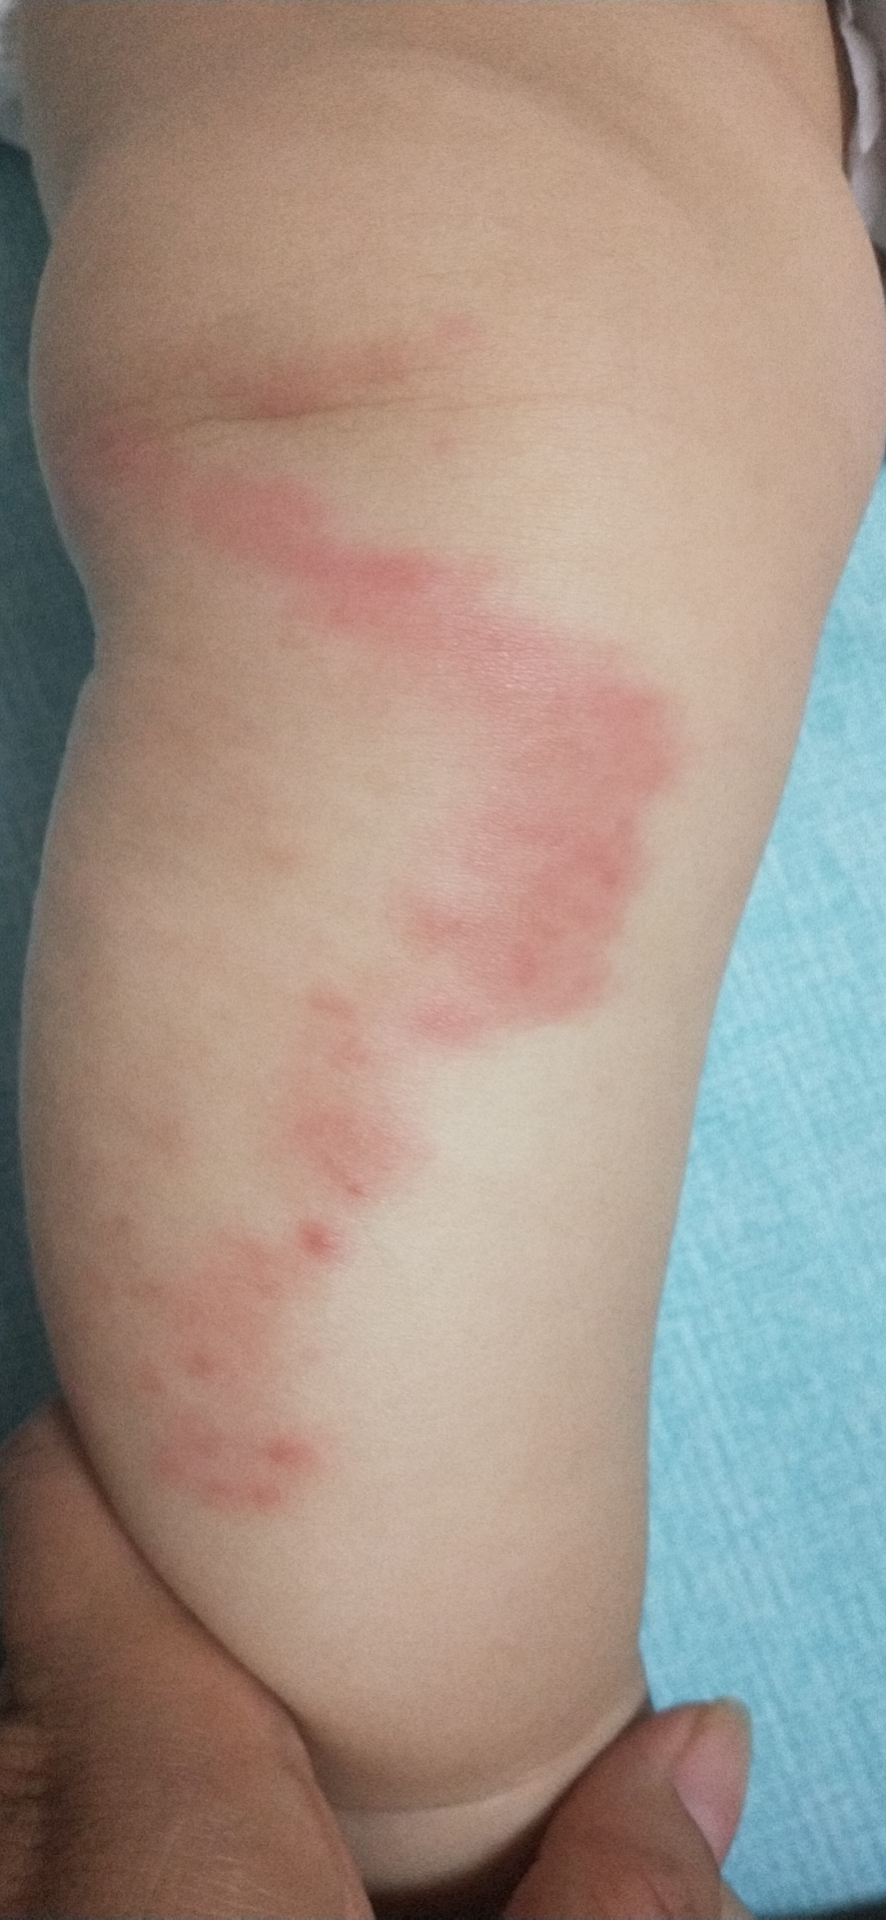 七个月婴儿小腿过敏性湿疹已经一个月了,一直往外扩散现在都到大腿了